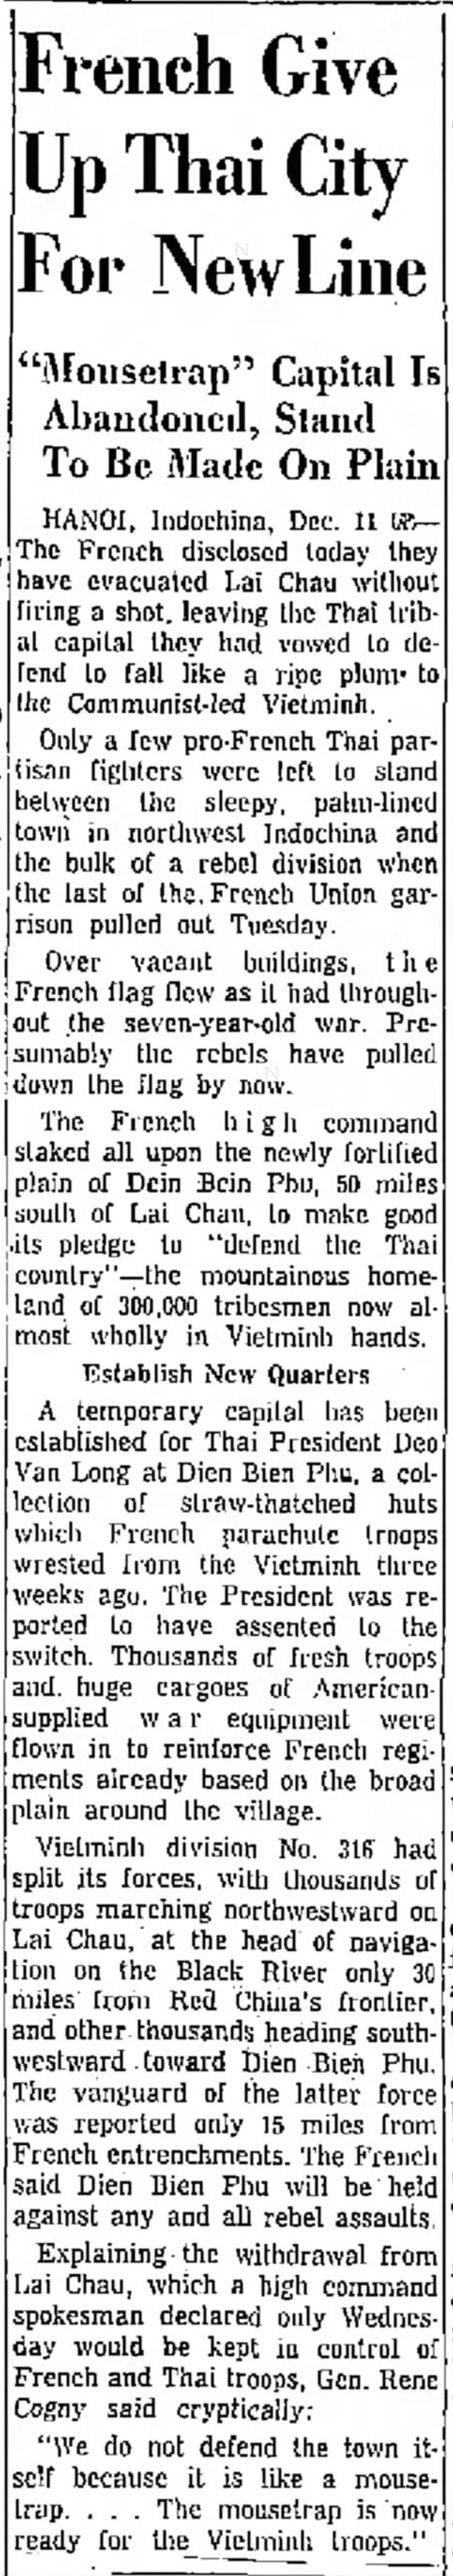 Dien Bien Phu
12 December 1953